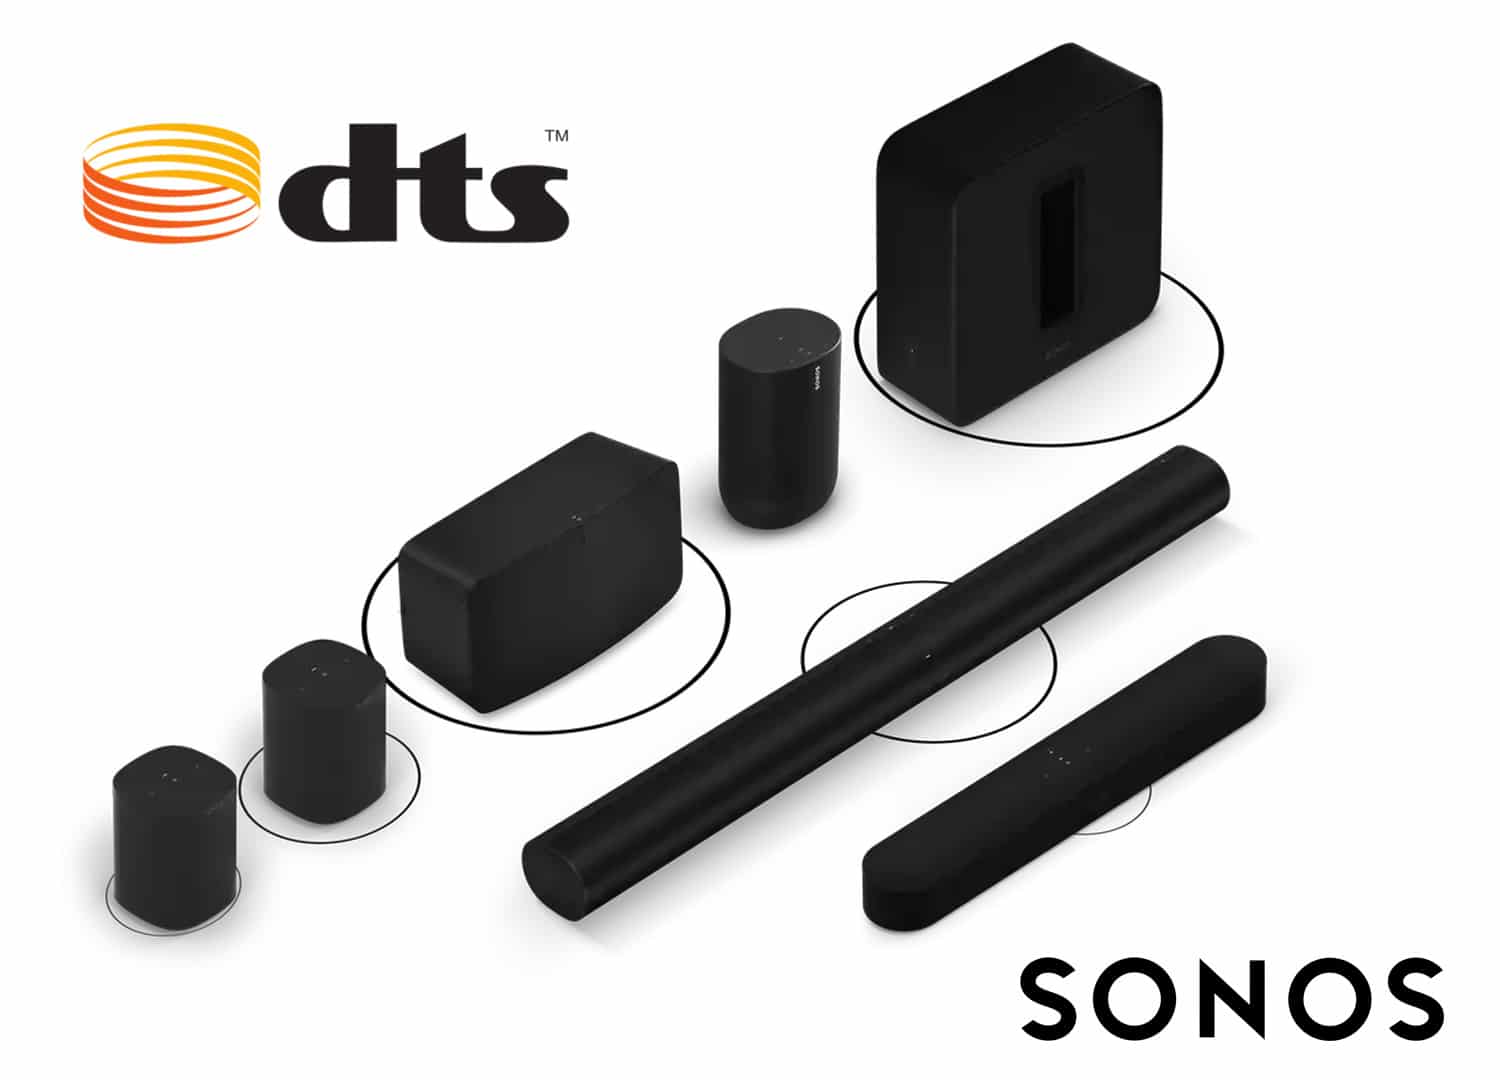 Sonos rollt Update für DTS aus — Dolby Atmos Music folgt